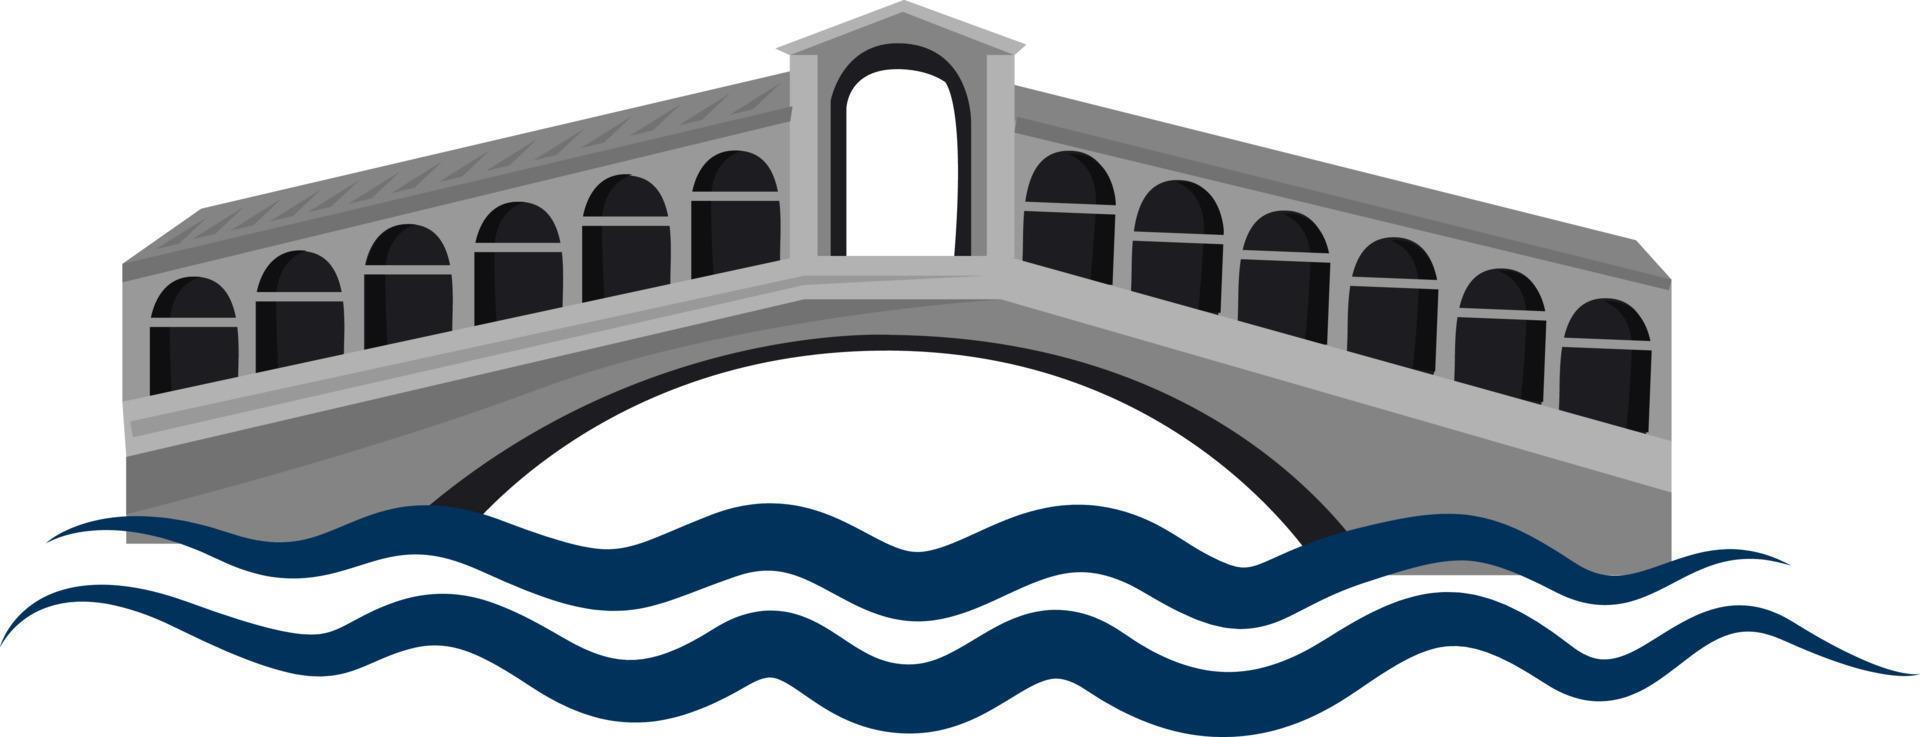 Pont Riatlo, illustration, vecteur sur fond blanc.